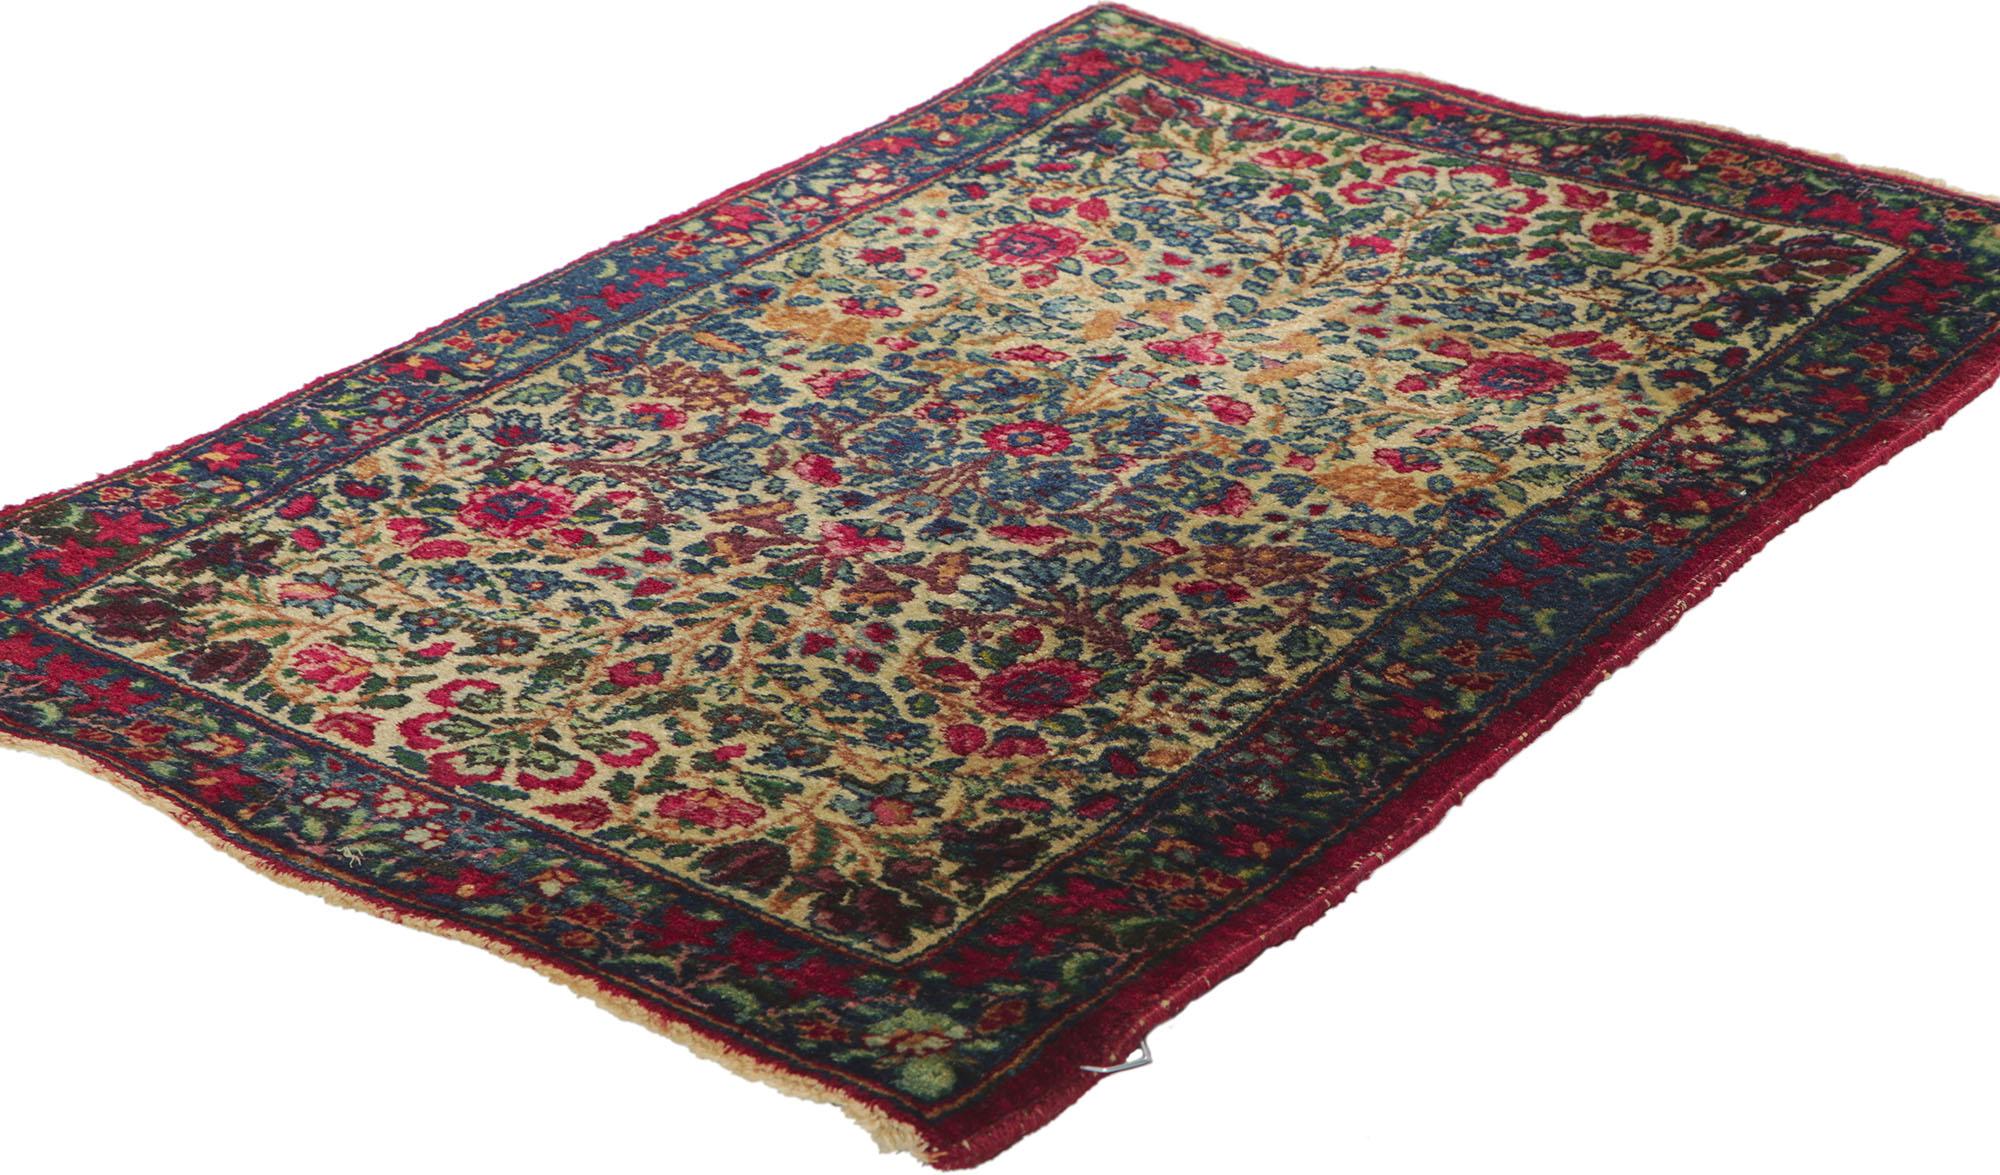 73228 Antiker persischer Kerman-Teppich, 01'08 x 02'06. In diesem handgeknüpften antiken persischen Kerman-Teppich aus Wolle vereinen sich zeitlose Anmut und majestätische Opulenz zu einem fesselnden visuellen Spektakel. Vor einem neutralen